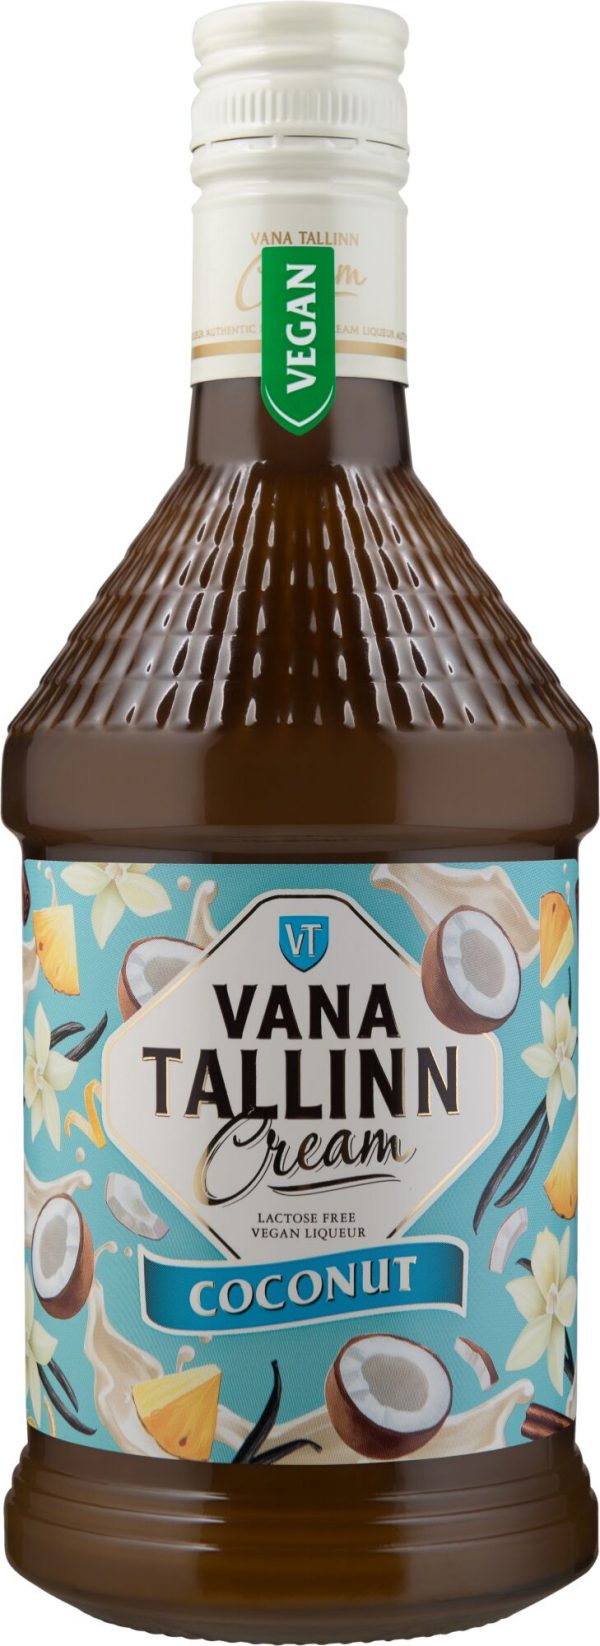 Vana Tallinn Cream Coconut